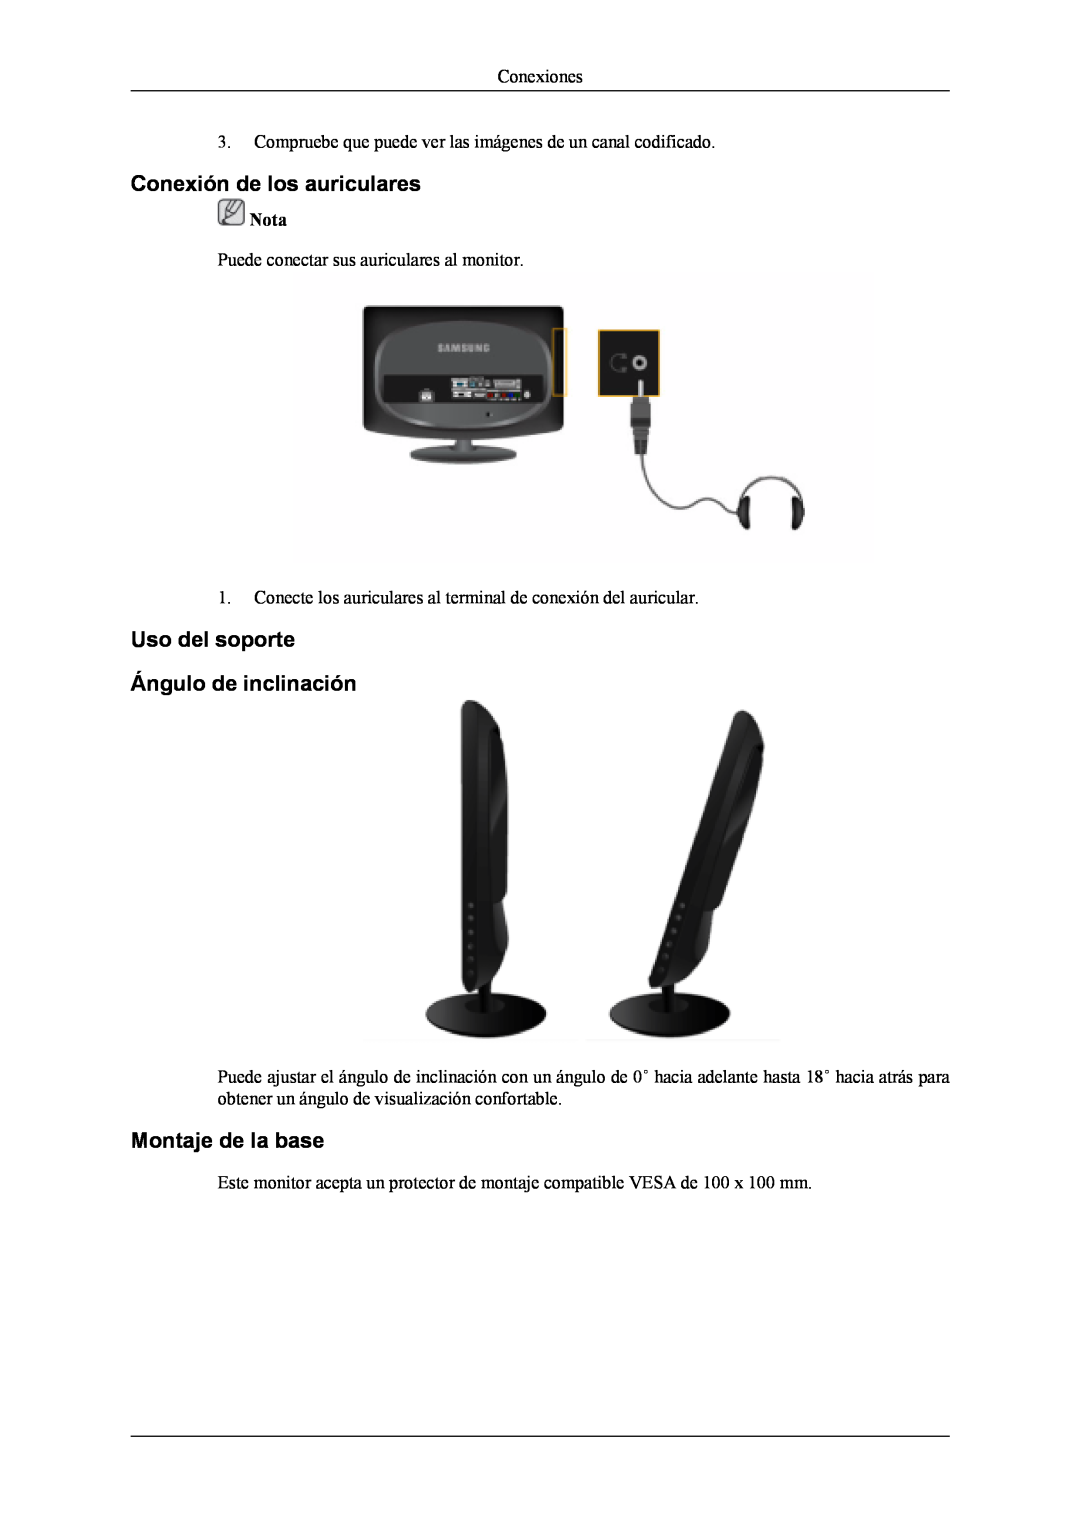 Samsung LS19CFVKH/EN manual Conexión de los auriculares, Uso del soporte Ángulo de inclinación, Montaje de la base, Nota 